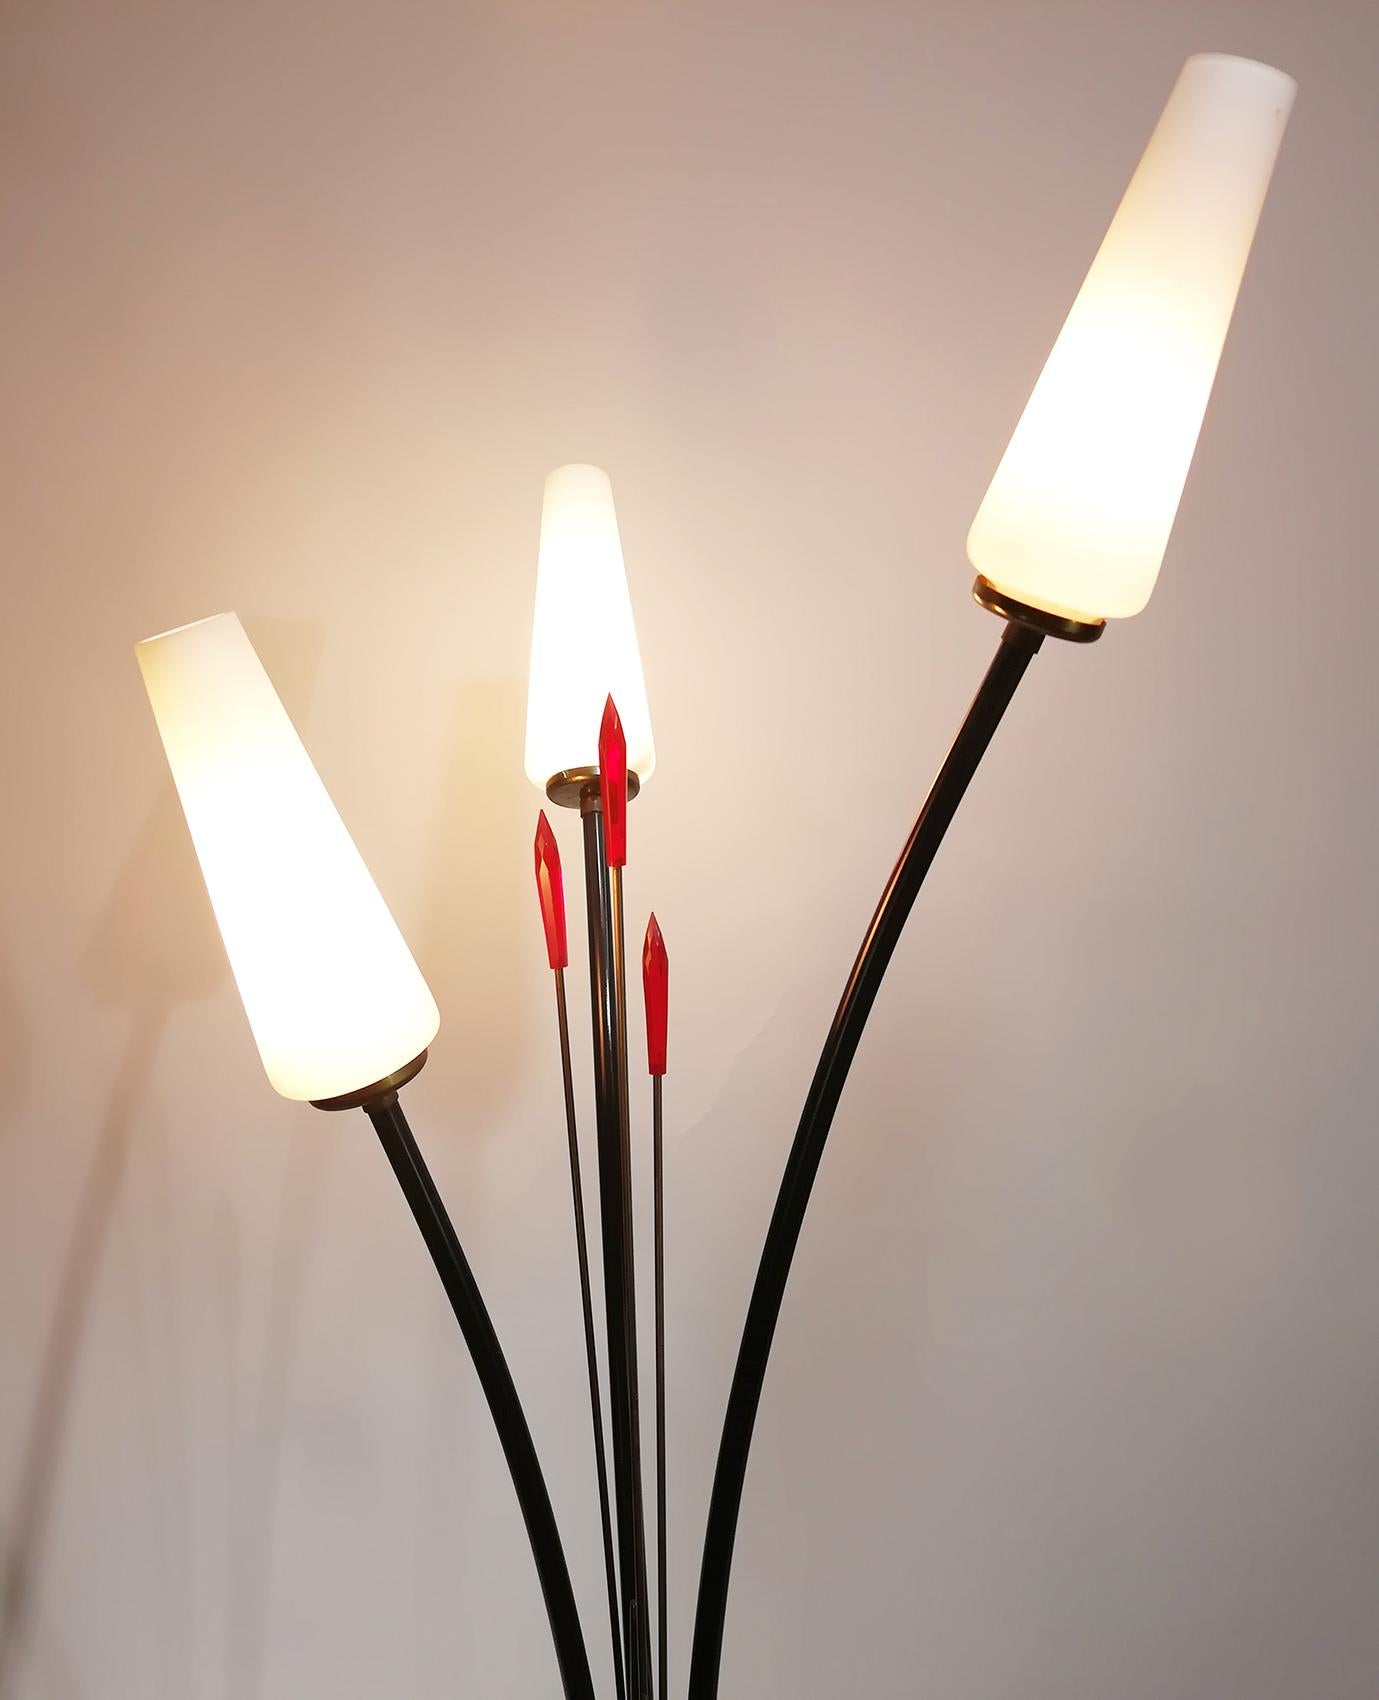 Un superbe lampadaire de style Stilnovo avec trois abat-jour en verre et une lance en Lucite rouge, fabriqué dans les années 1950 en Italie. Cette élégante lampe en forme de fleur est fabriquée en laiton.
L'aspect suave et élégant est